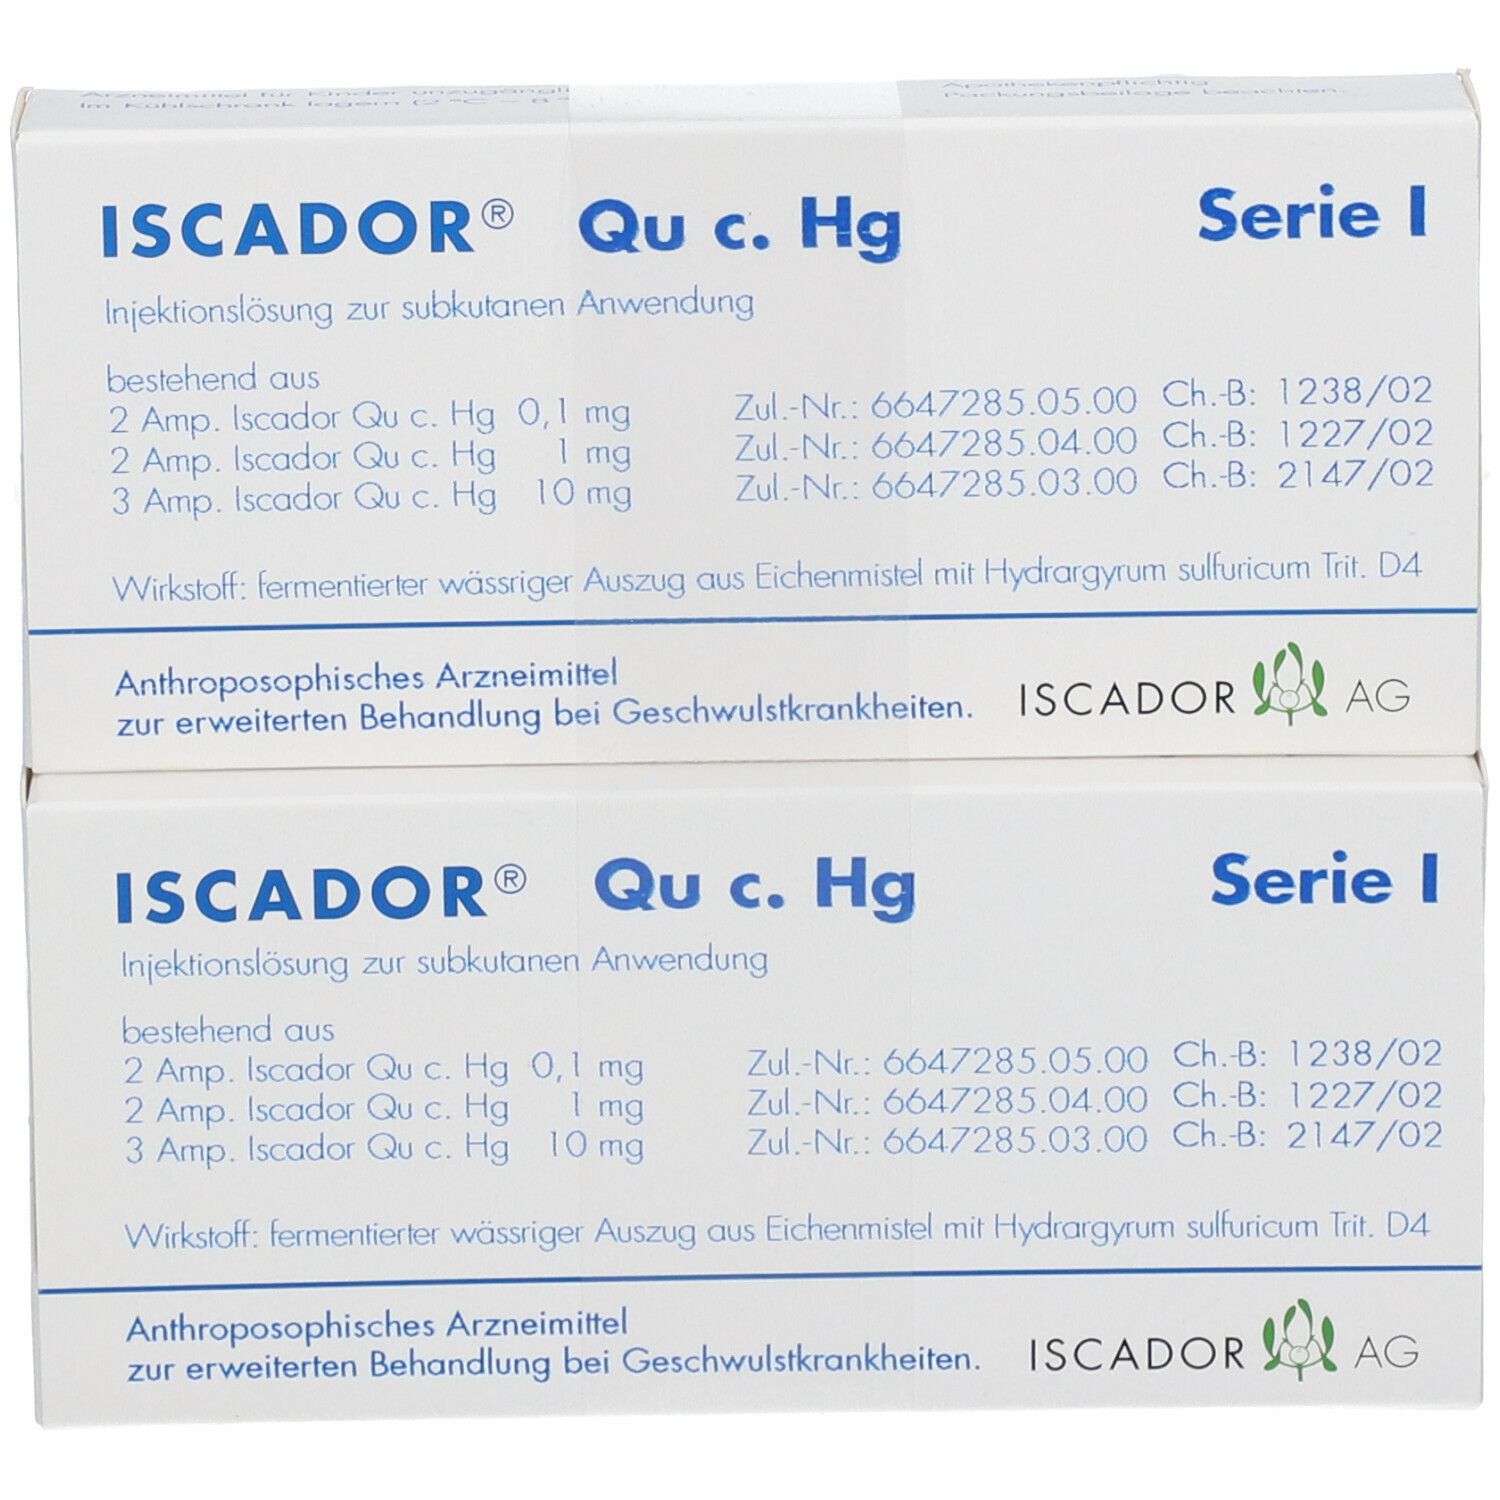 ISCADOR® Qu c. Hg Serie I